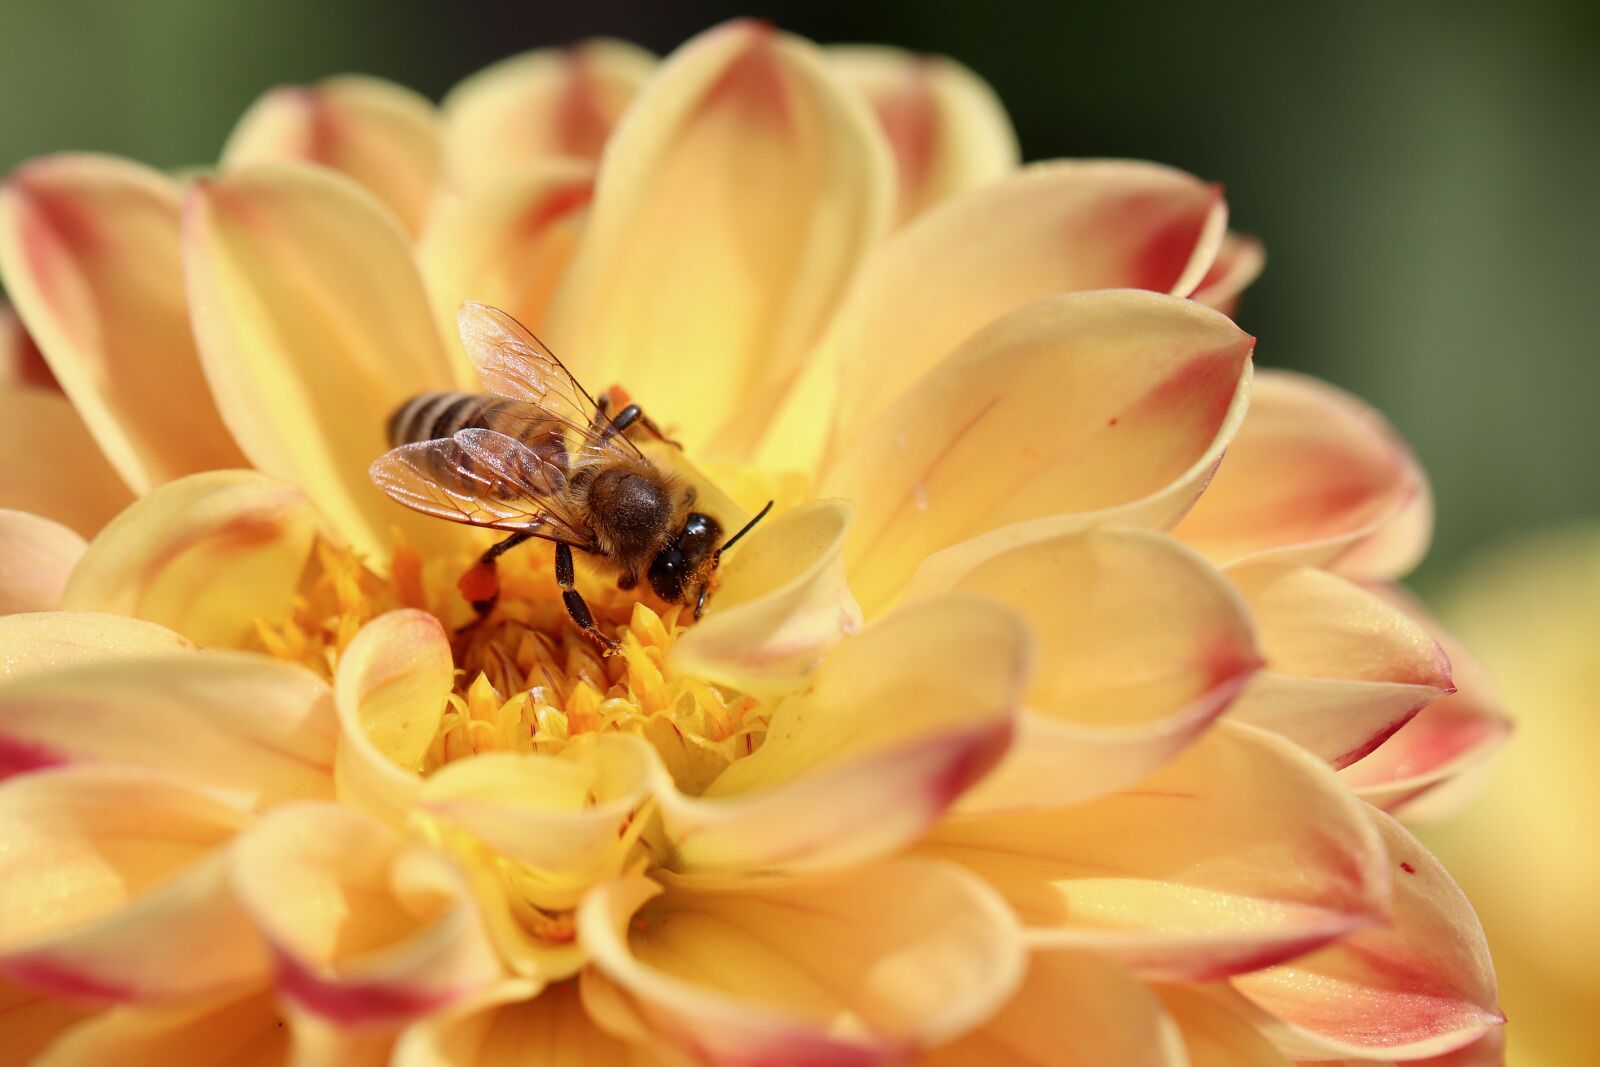 Canon EOS 800D (EOS Rebel T7i / EOS Kiss X9i) sample photo. Dahlia, bee, pollen photography